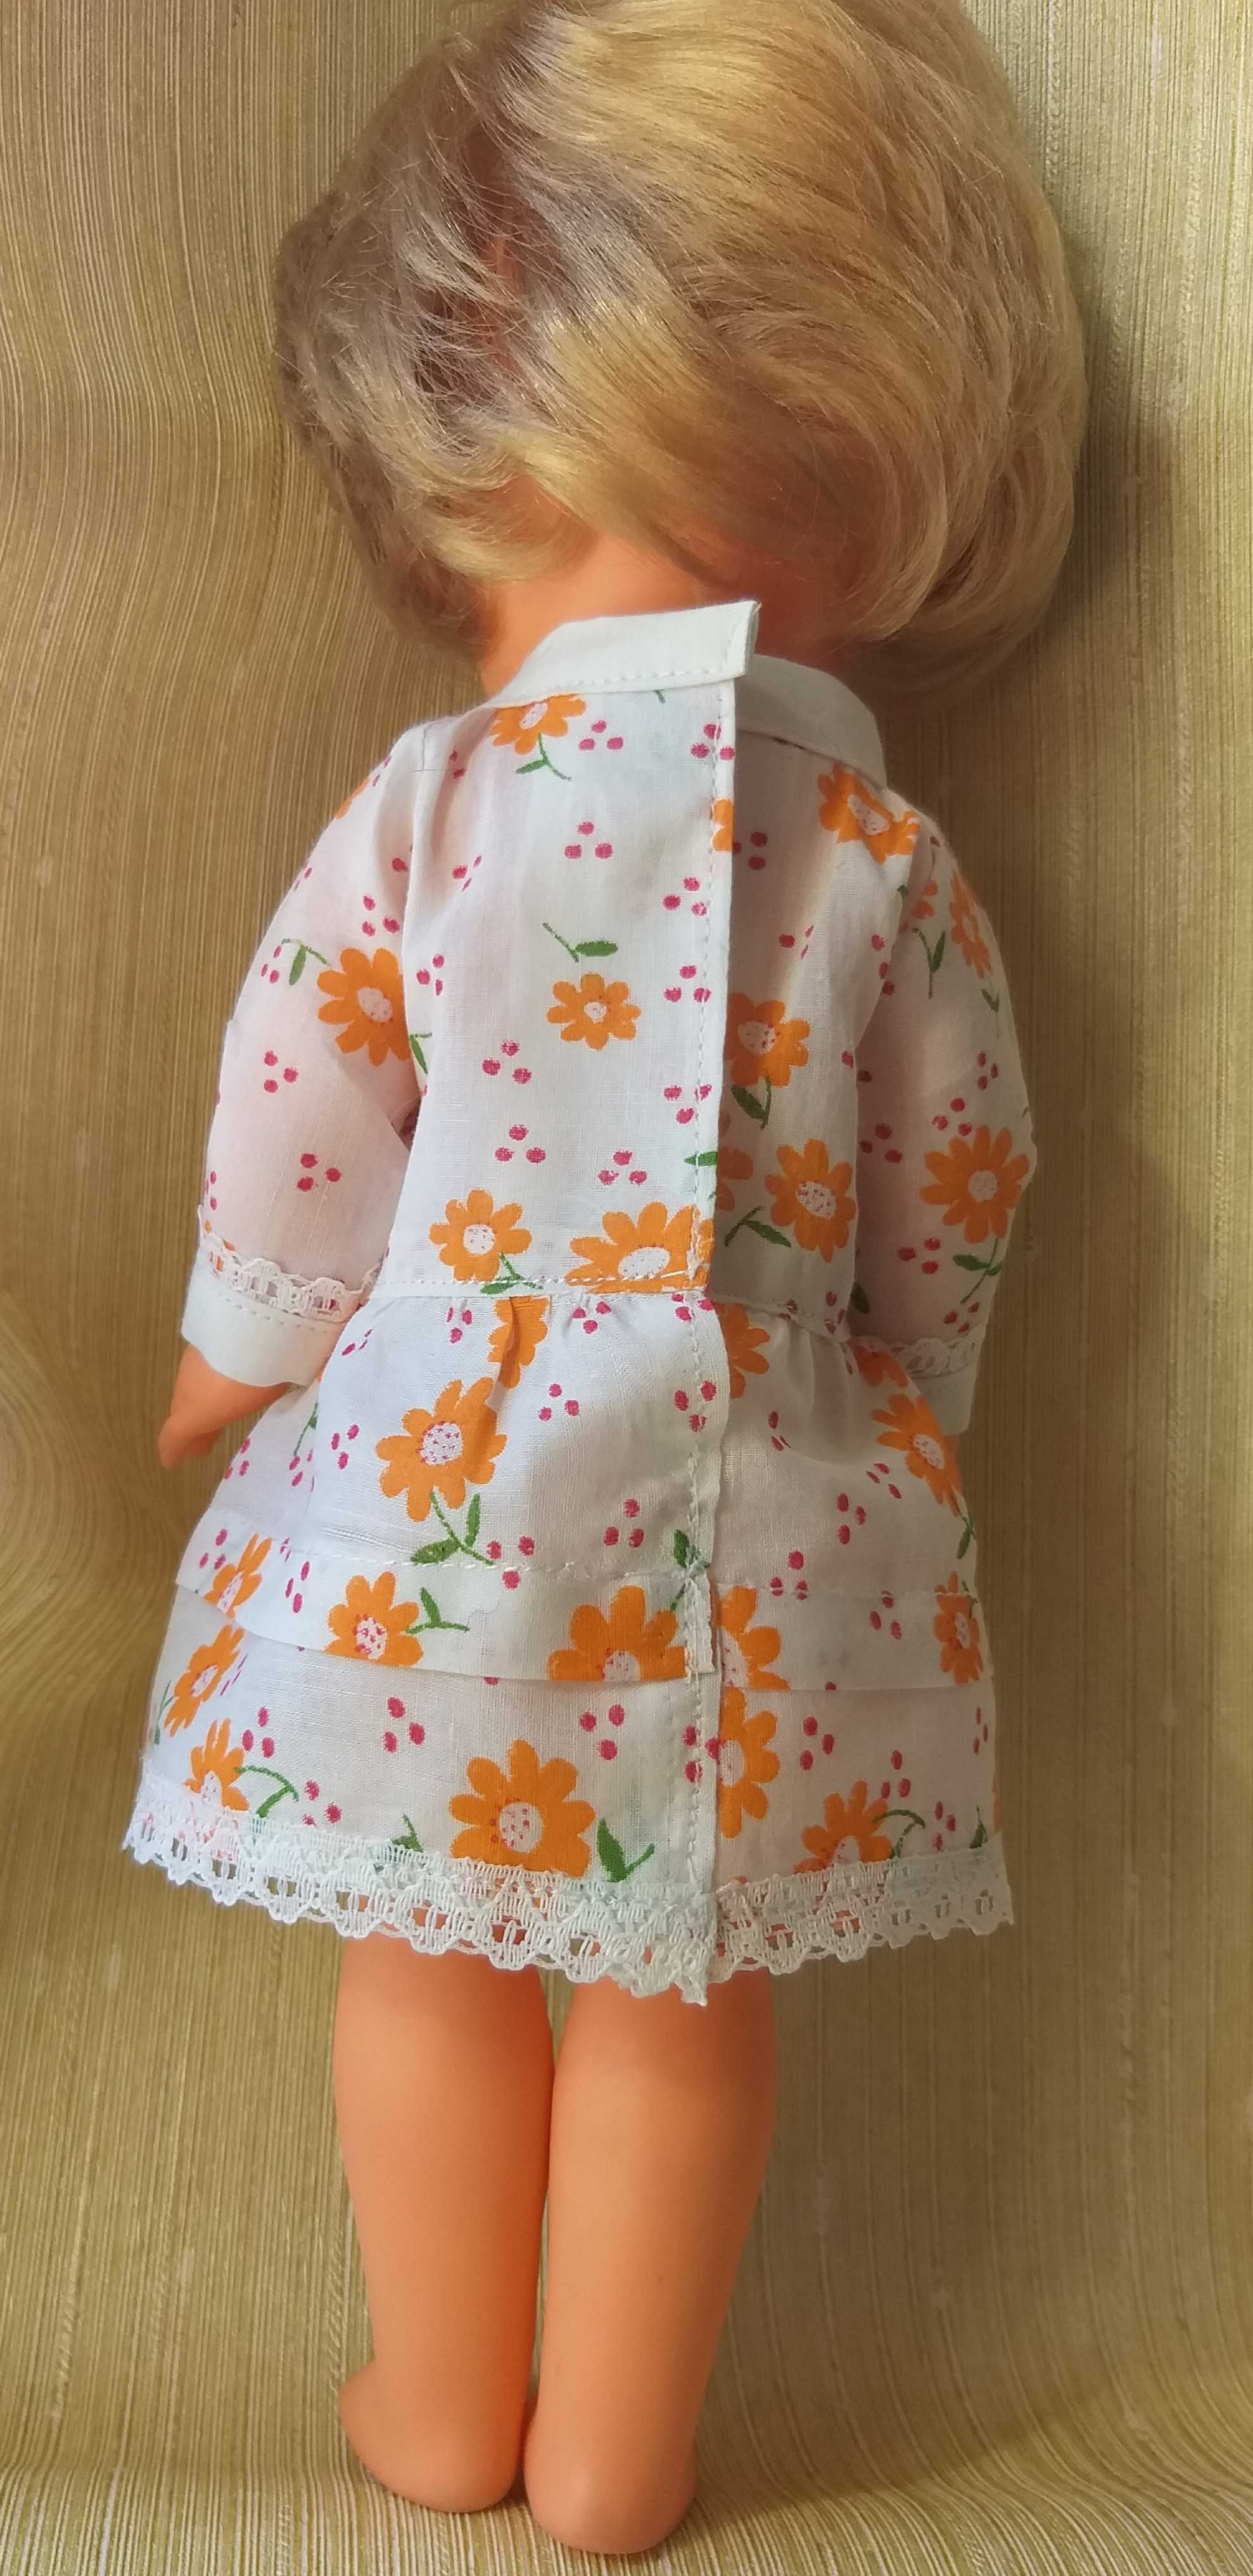 Платье для куклы гдр 28-32см сукня для ляльки  раунштайн сонни бигги